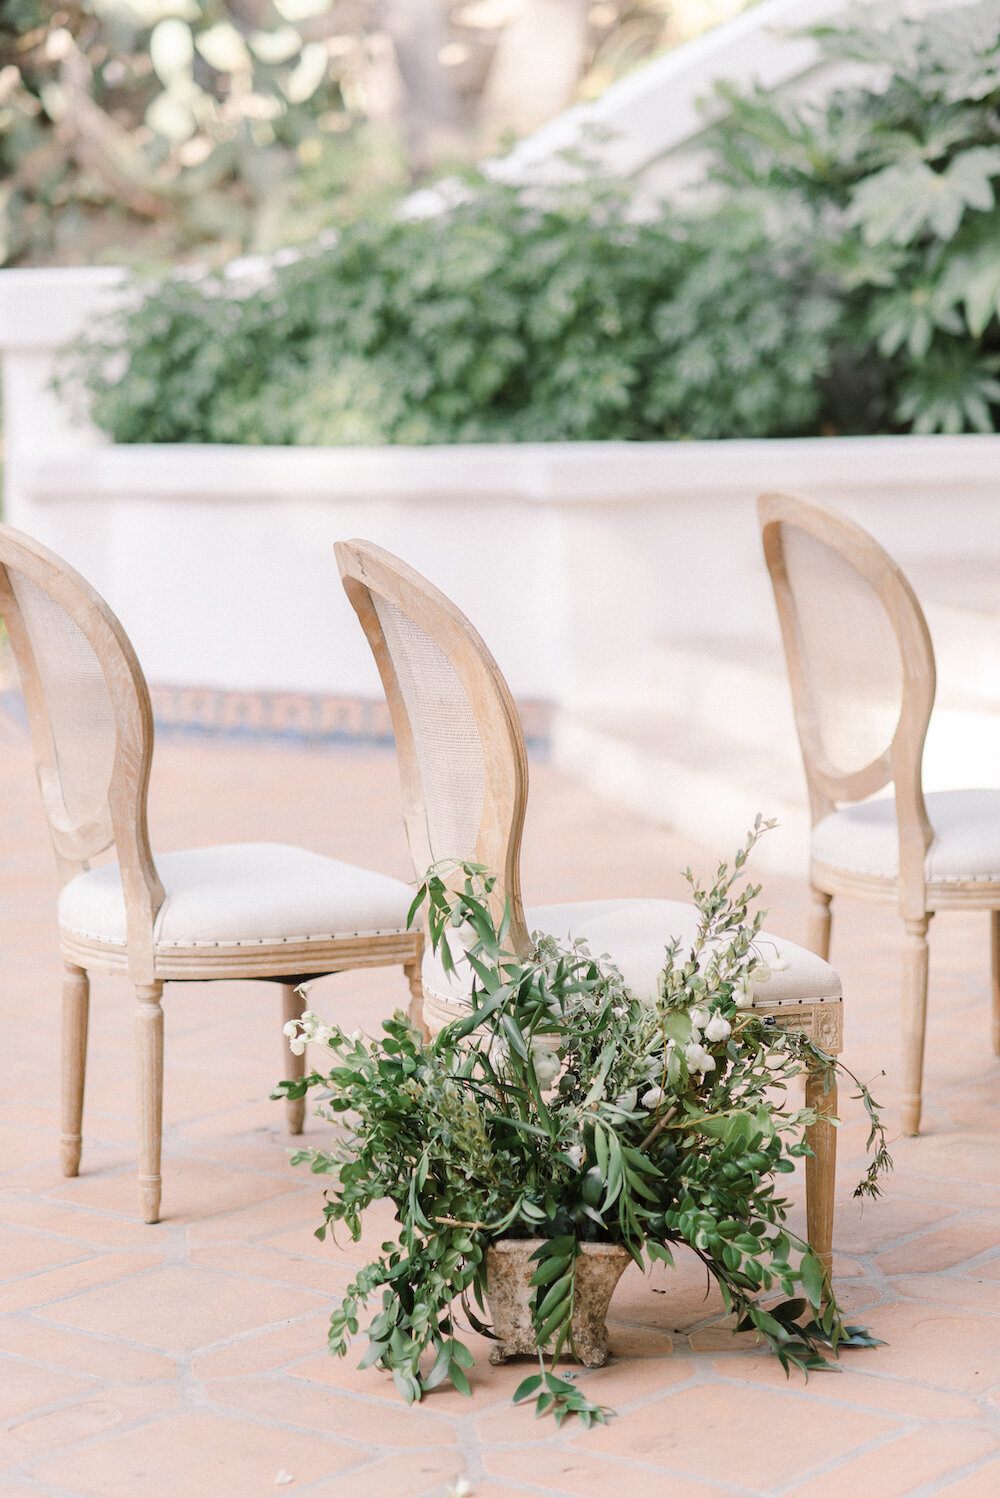 Blue and White Wedding Table at Rancho Las Lomas